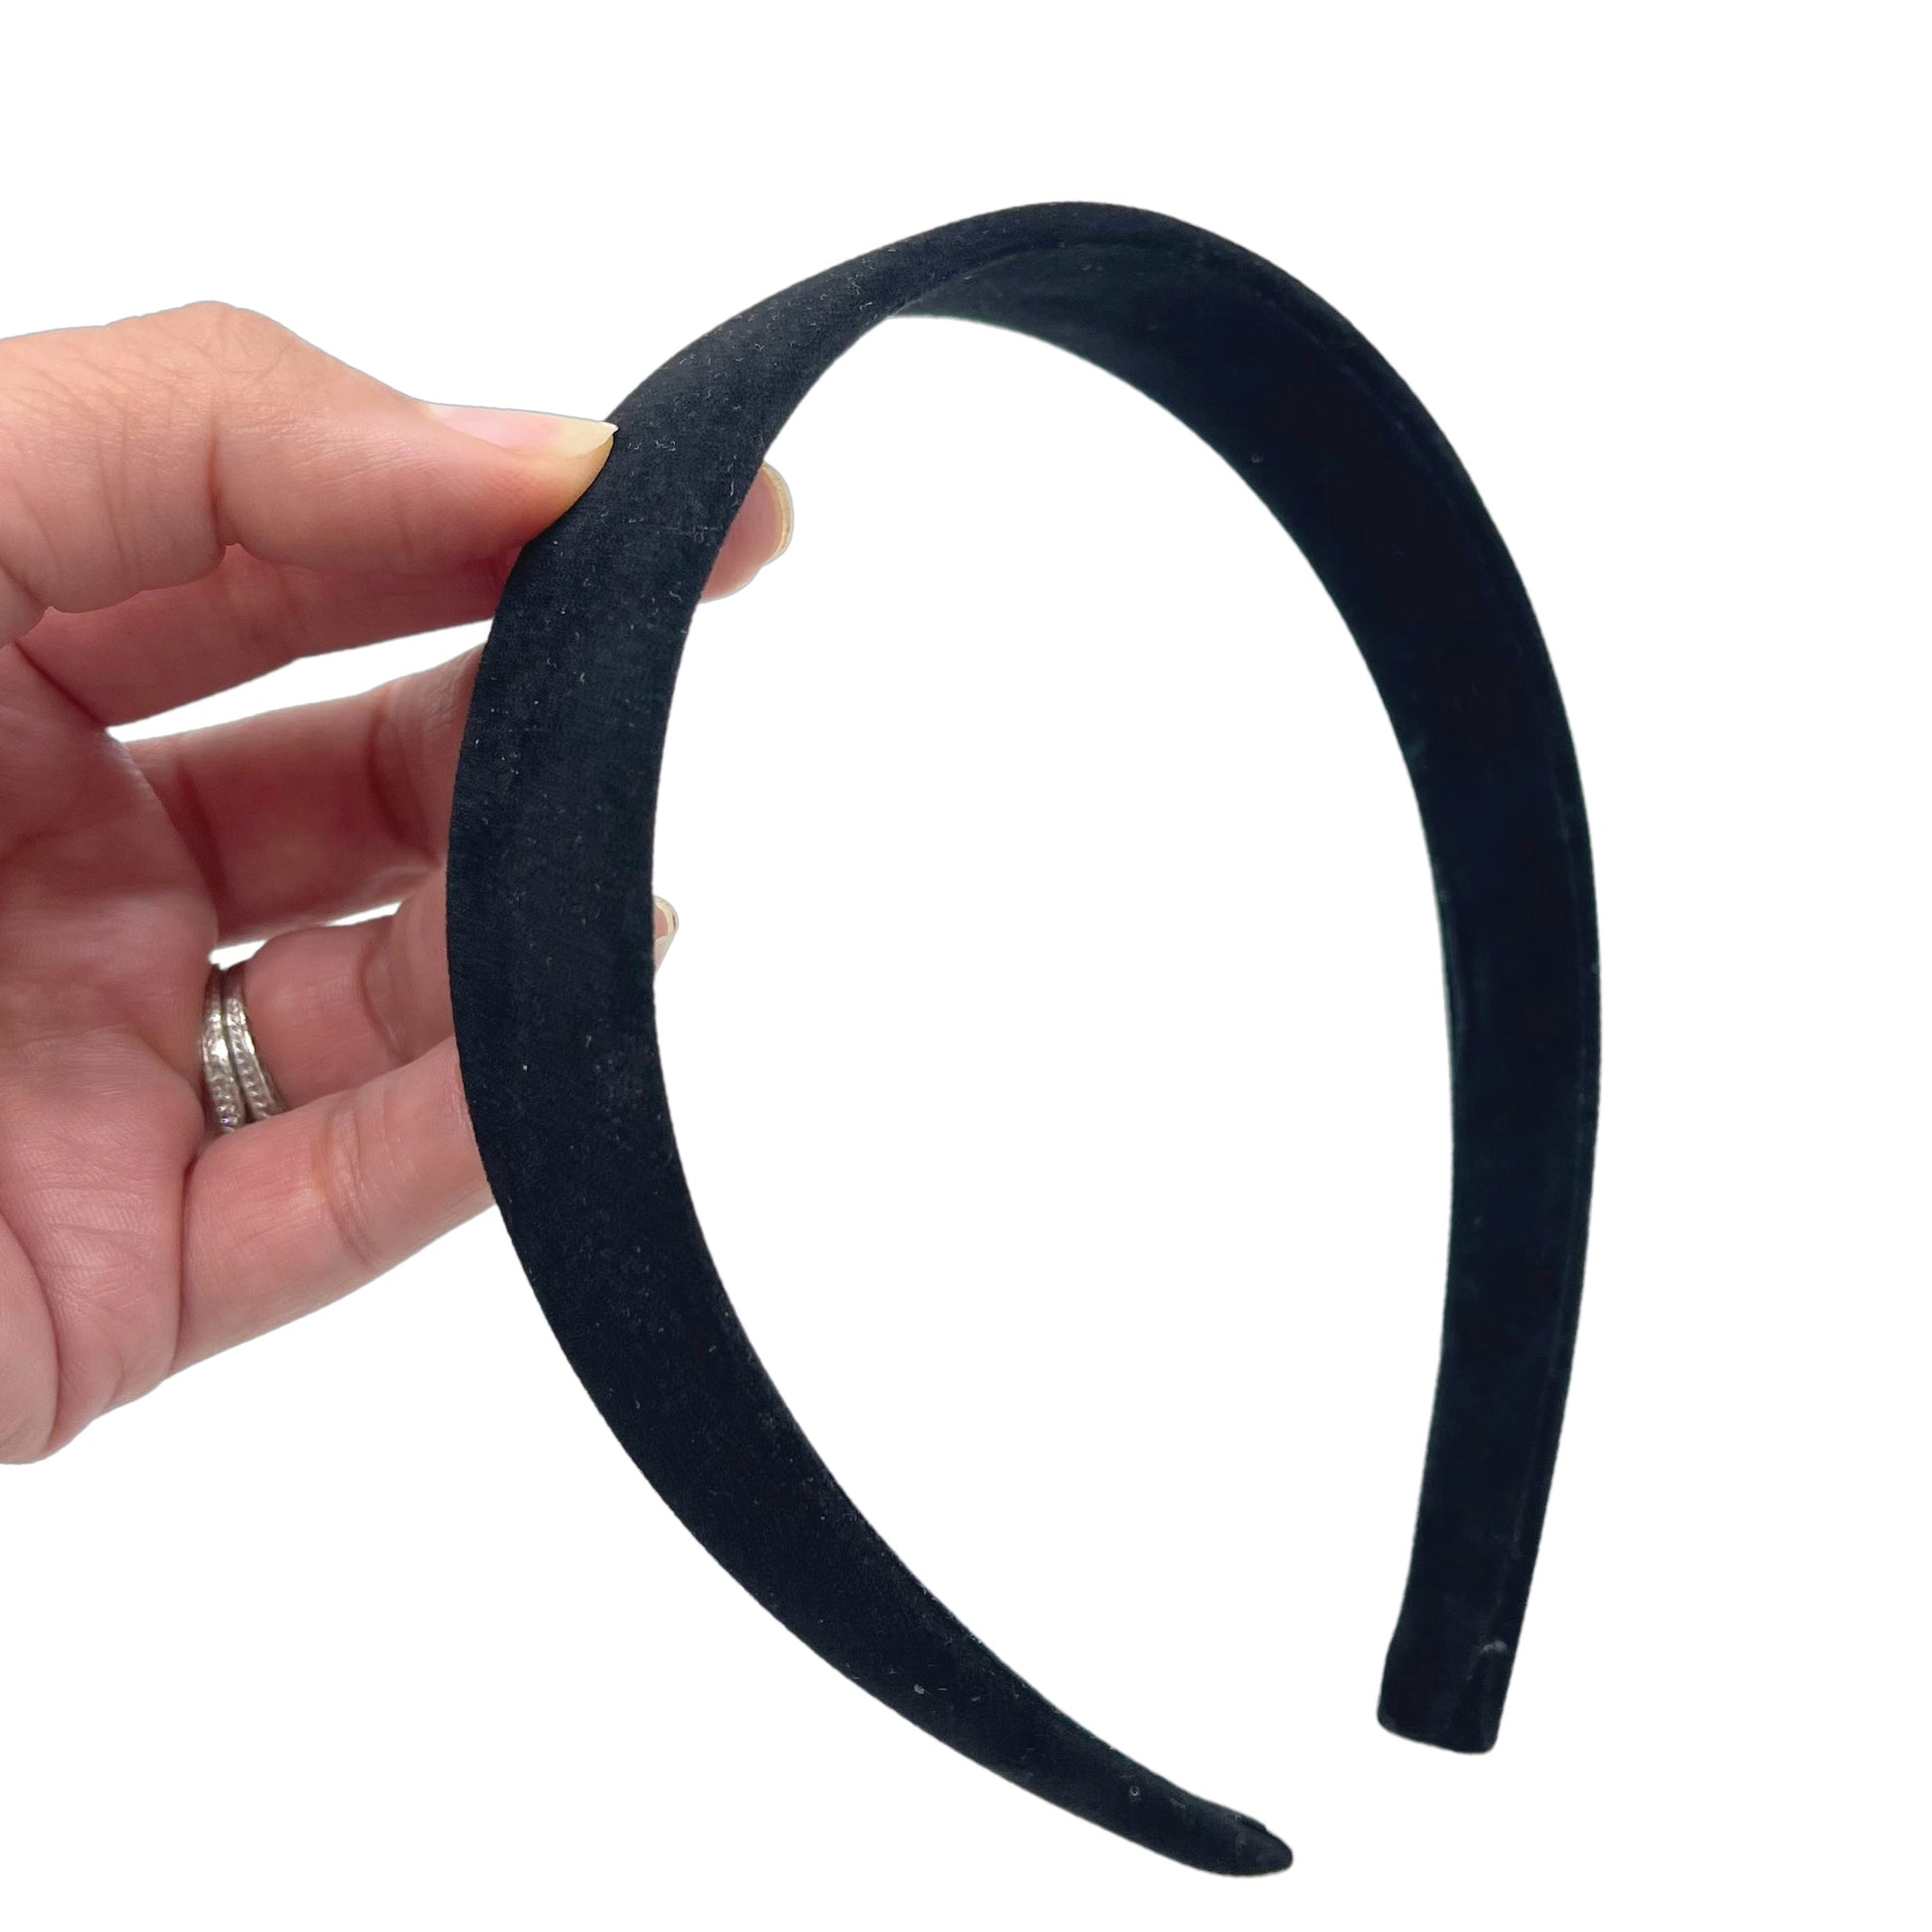 Hand holding black suede velvet lined headband.